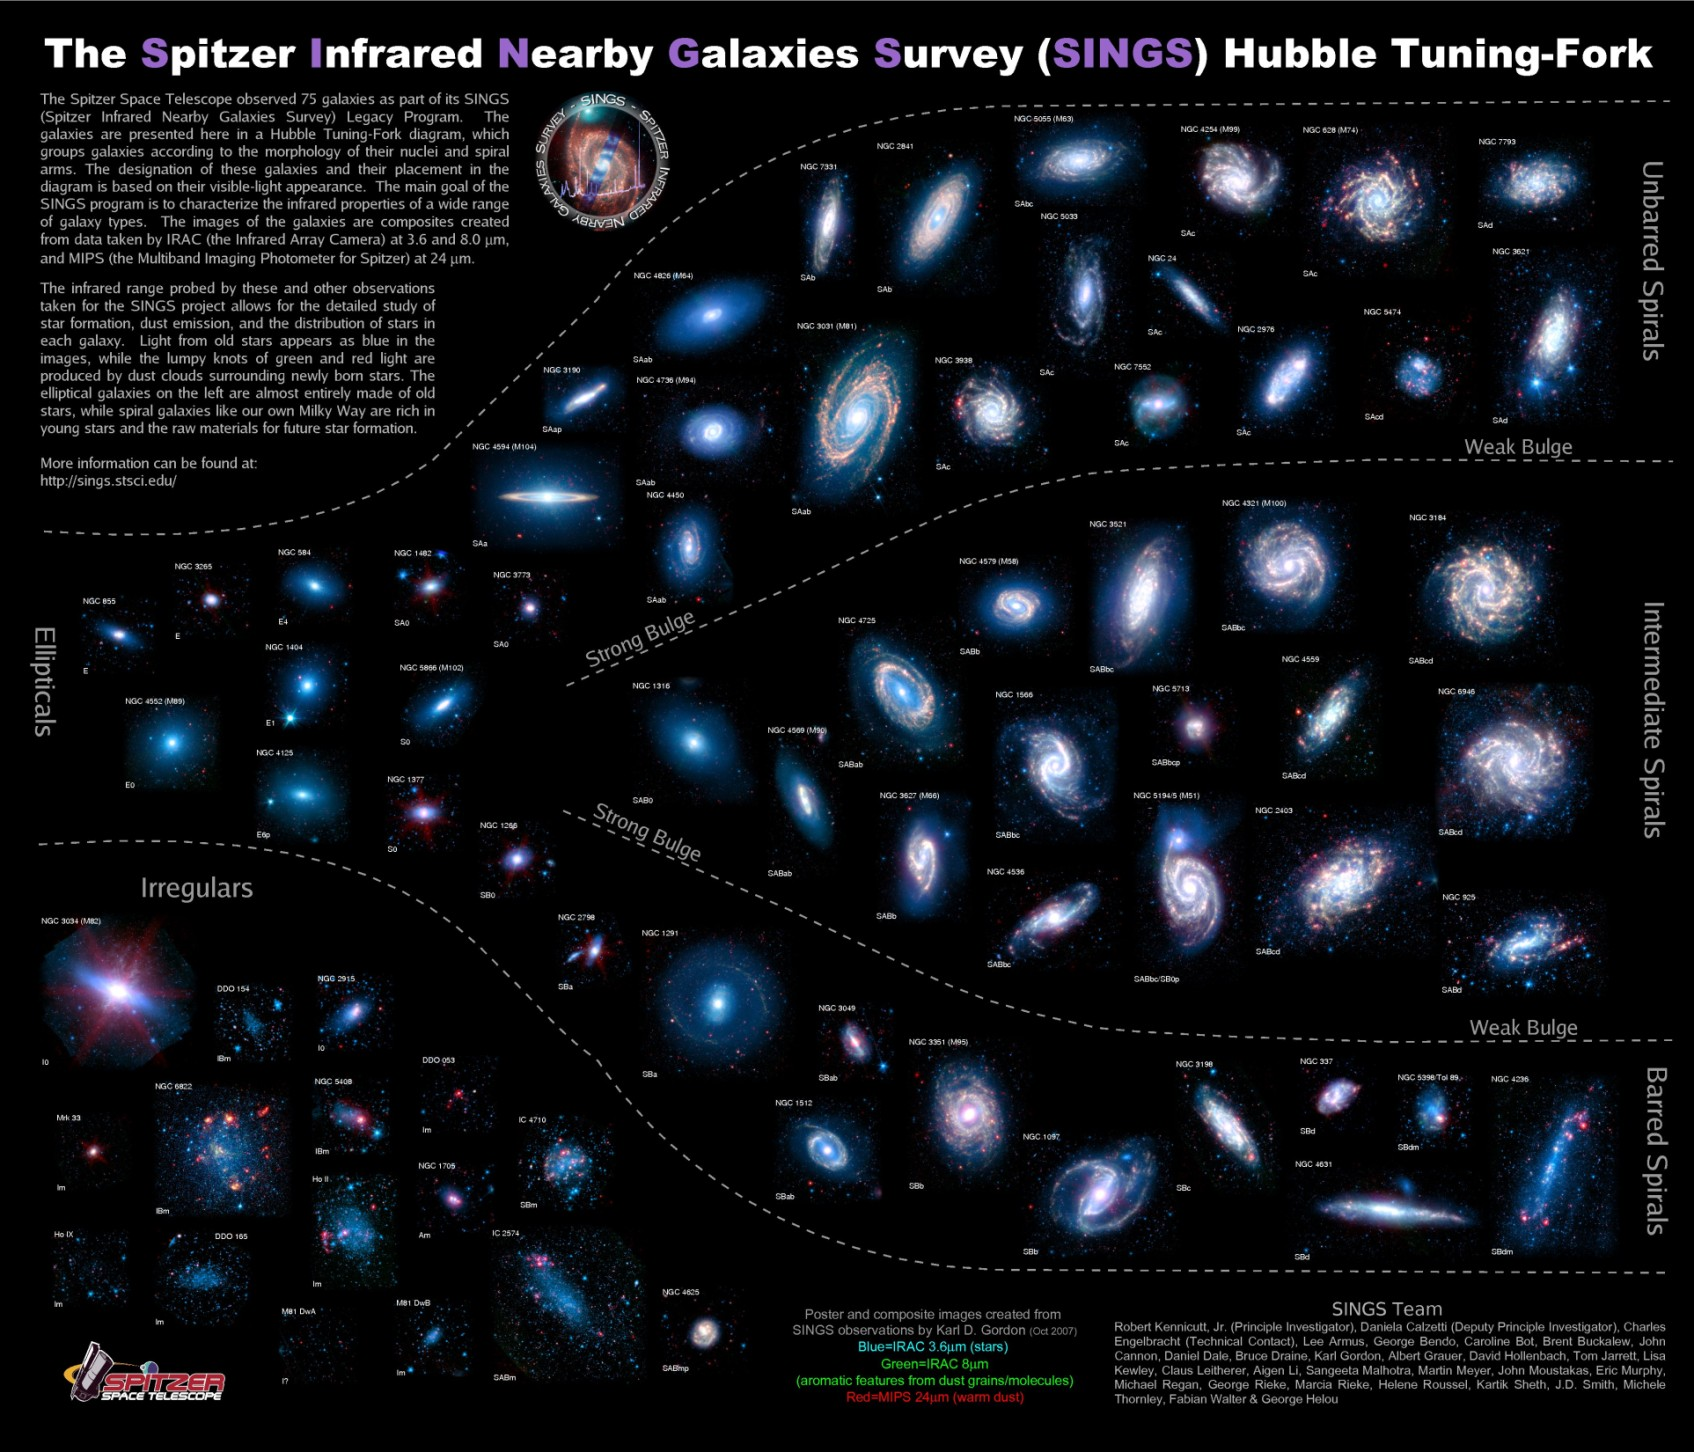 ΤΑΞΙΝΟΜΗΣΗ ΓΑΛΑΞΙΩΝ Εικόνα 7: Ταξινόμηση 75 γαλαξιών που